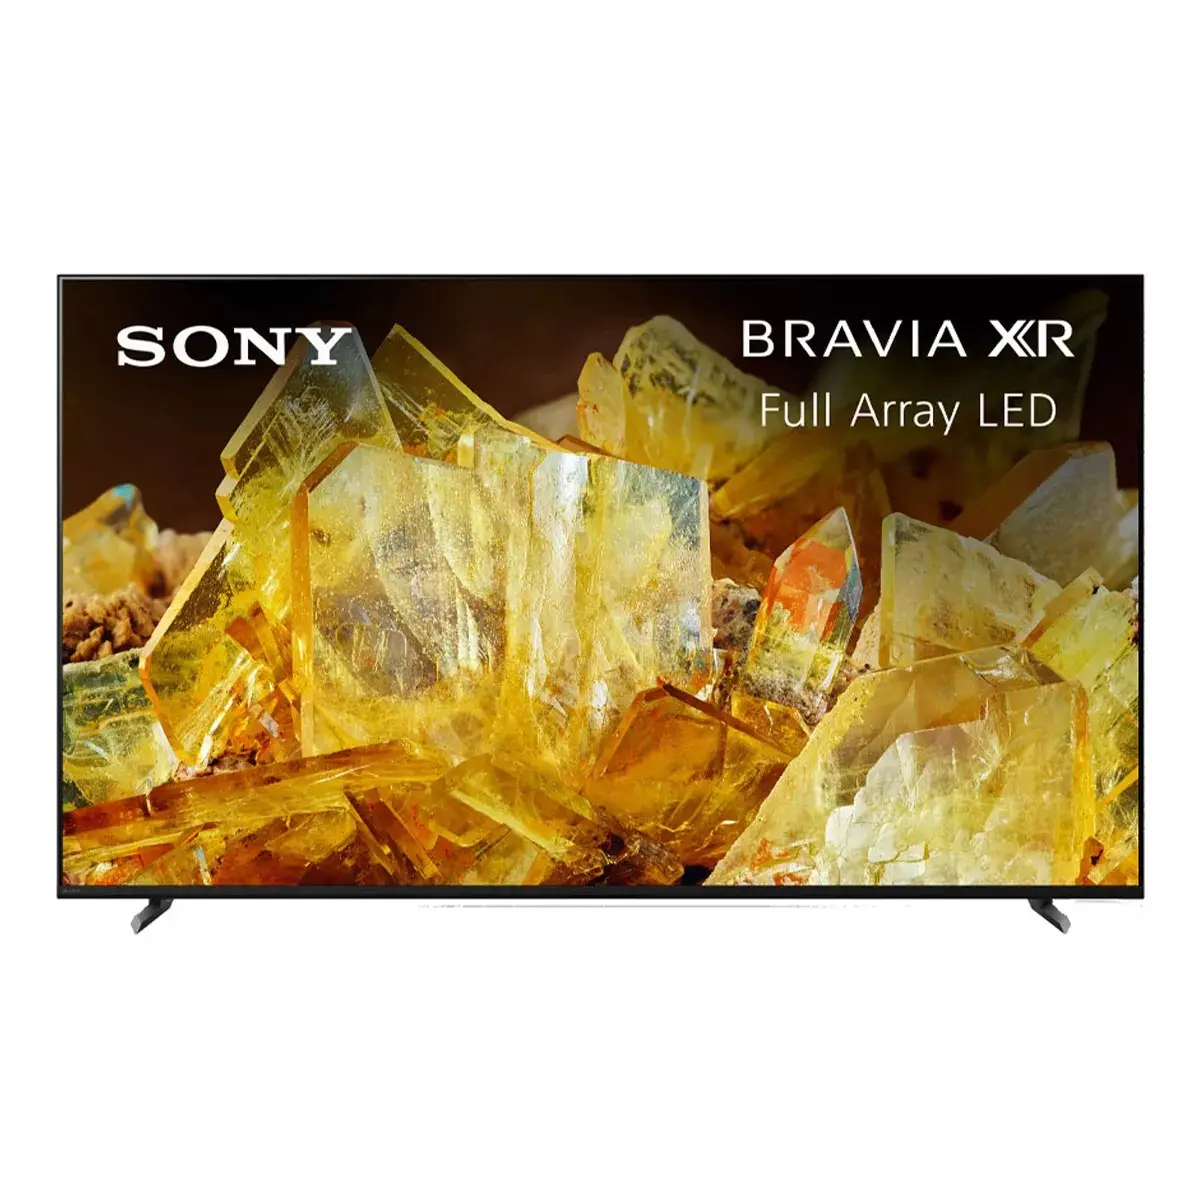 Betaalbare Prijs S O N Y Xr 55X 90l 55 "B R A V I A 4K Hdr Full Array Led Smart Tv